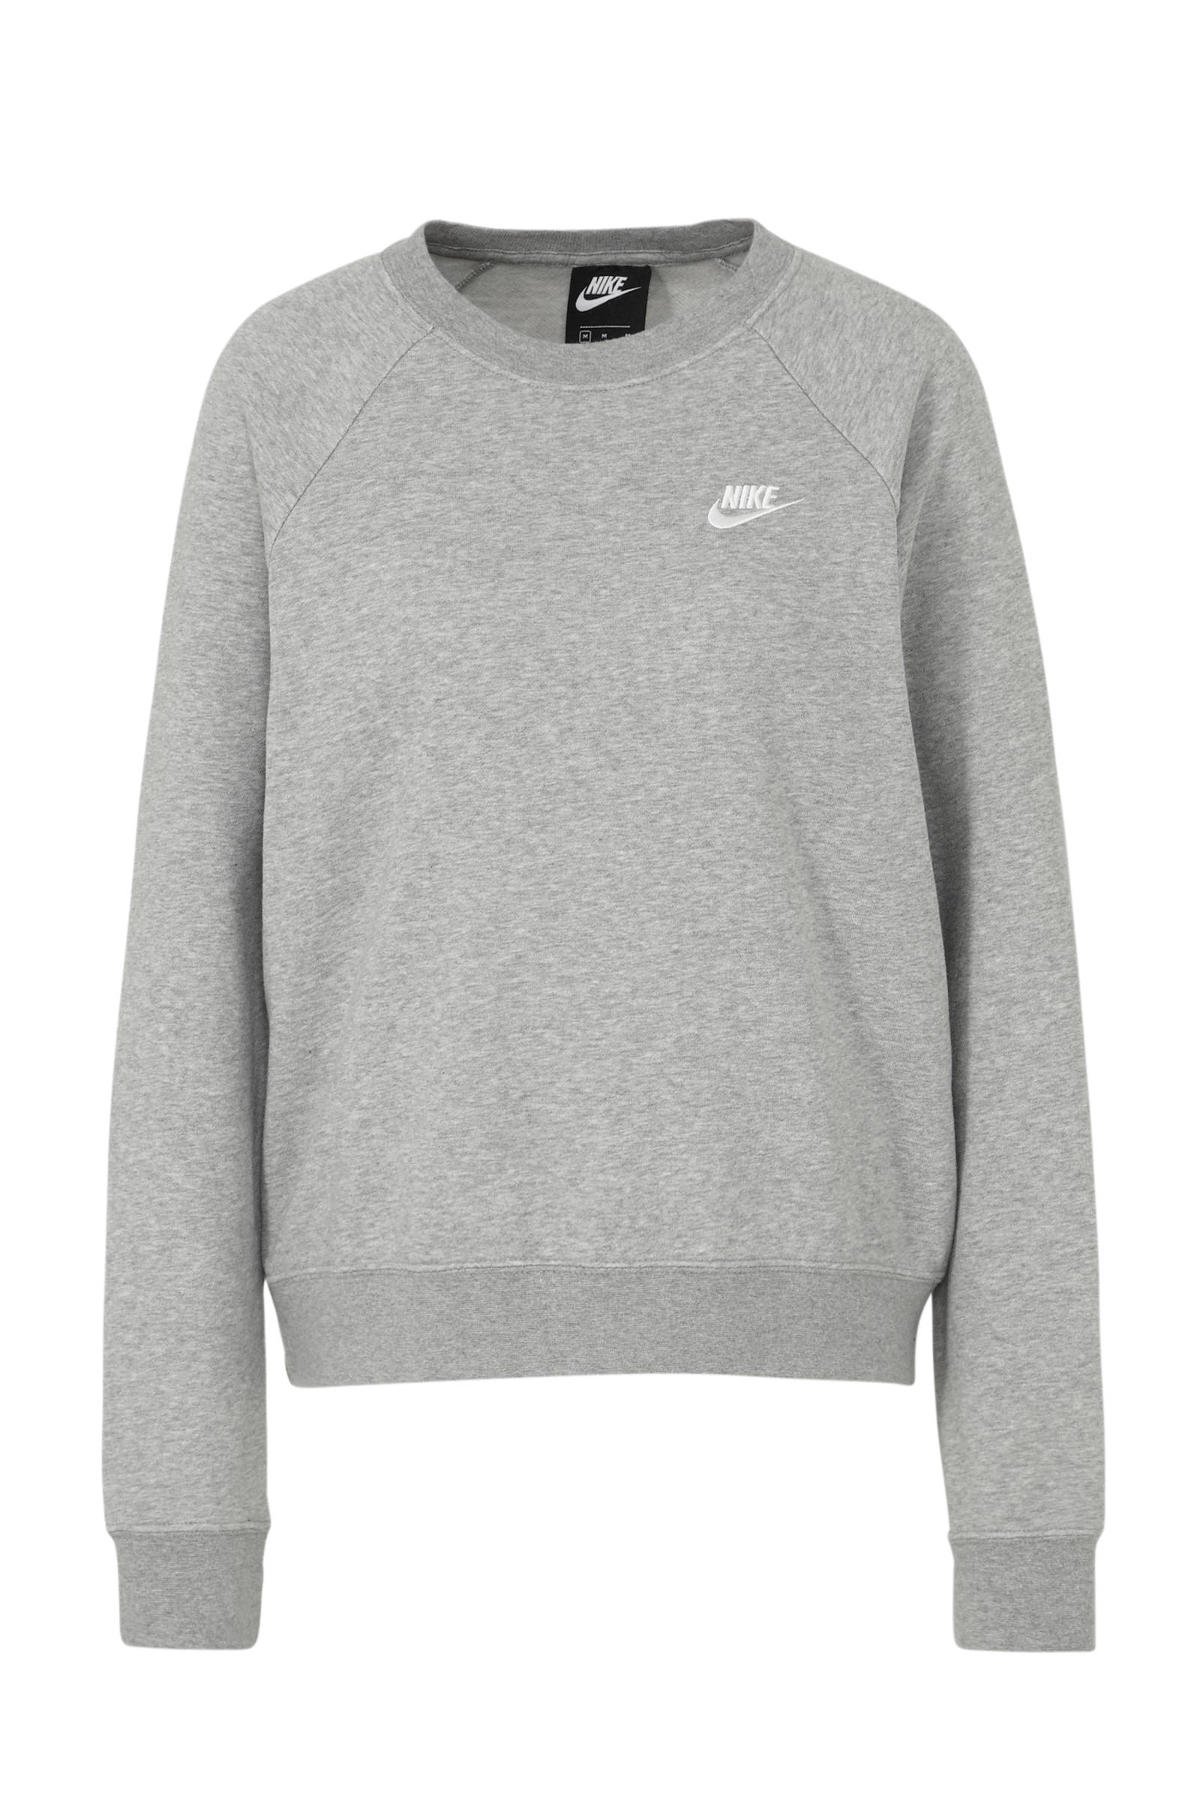 kleermaker trainer pellet Nike sweater grijs melange kopen? | Morgen in huis | wehkamp